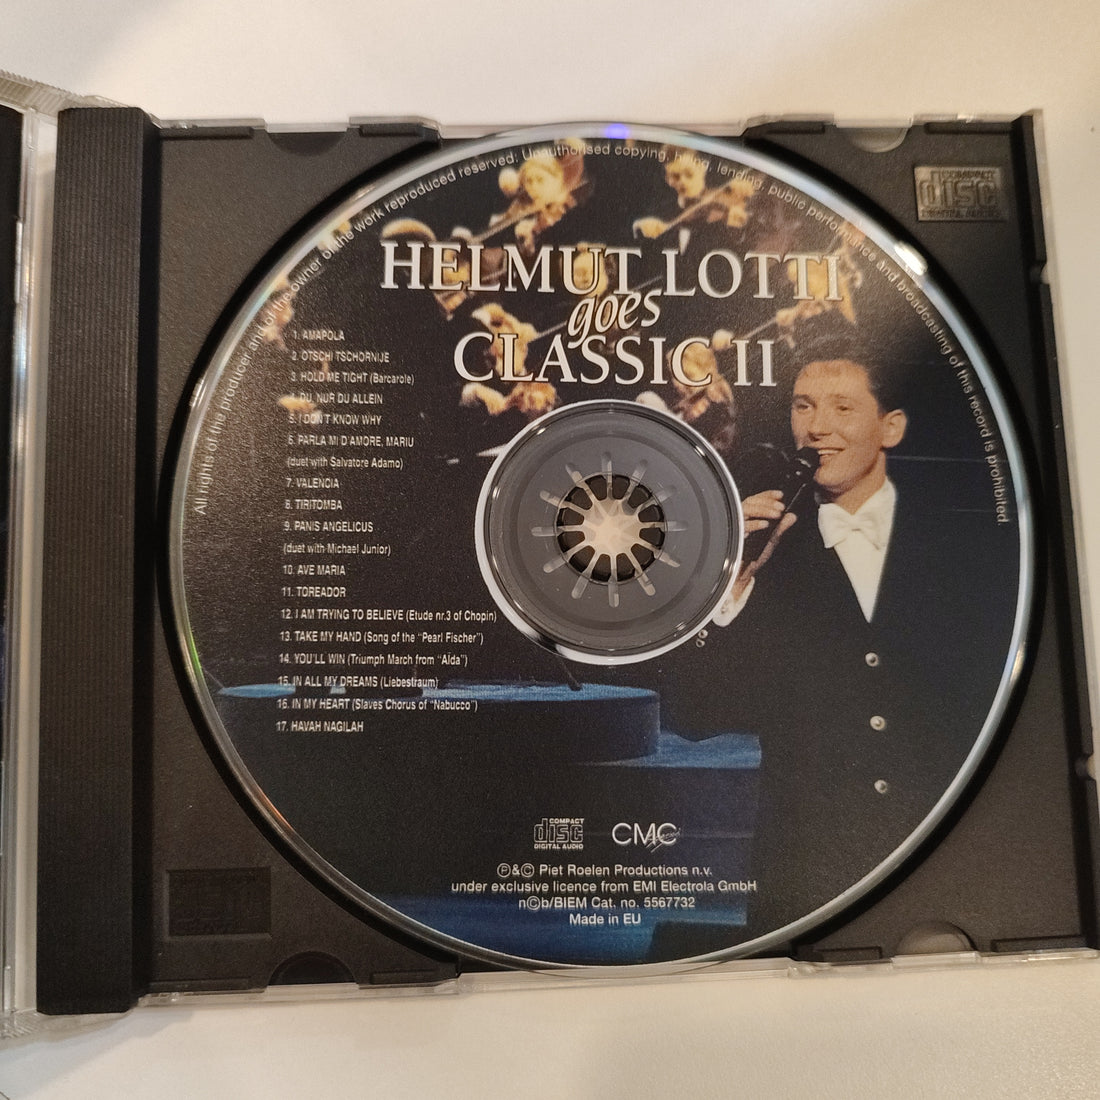 Helmut Lotti - Helmut Lotti Goes Classic II (CD) (VG+)